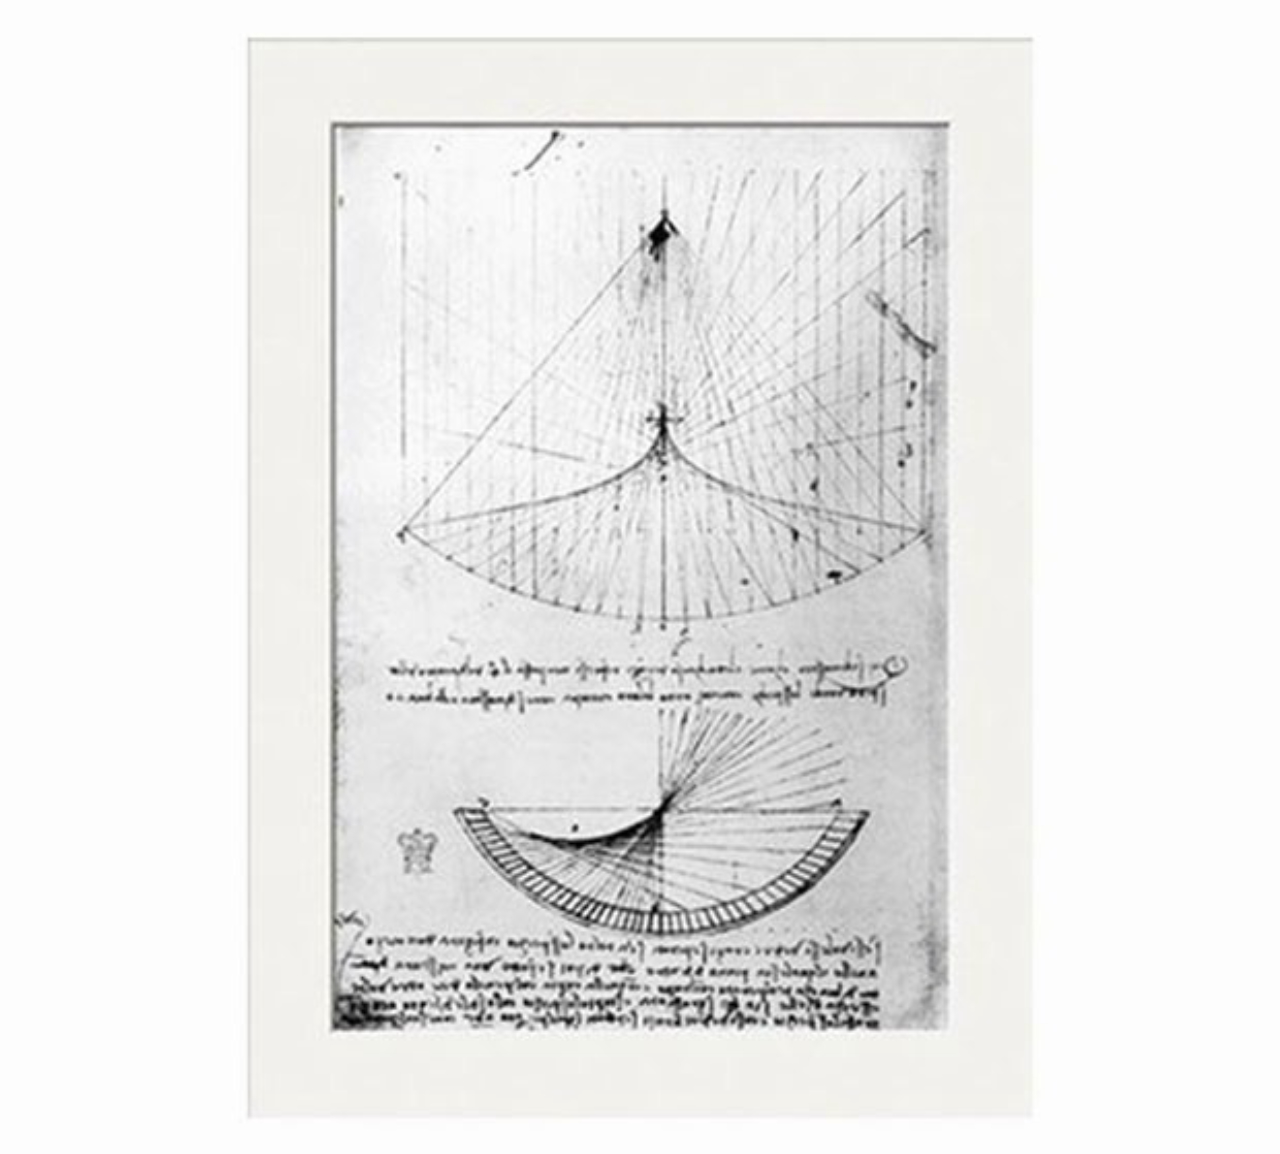 Estudos de Da Vinci sobre as imagens de raios de sol sobre um espelho parabólico.<br>Imagem: Reprodução